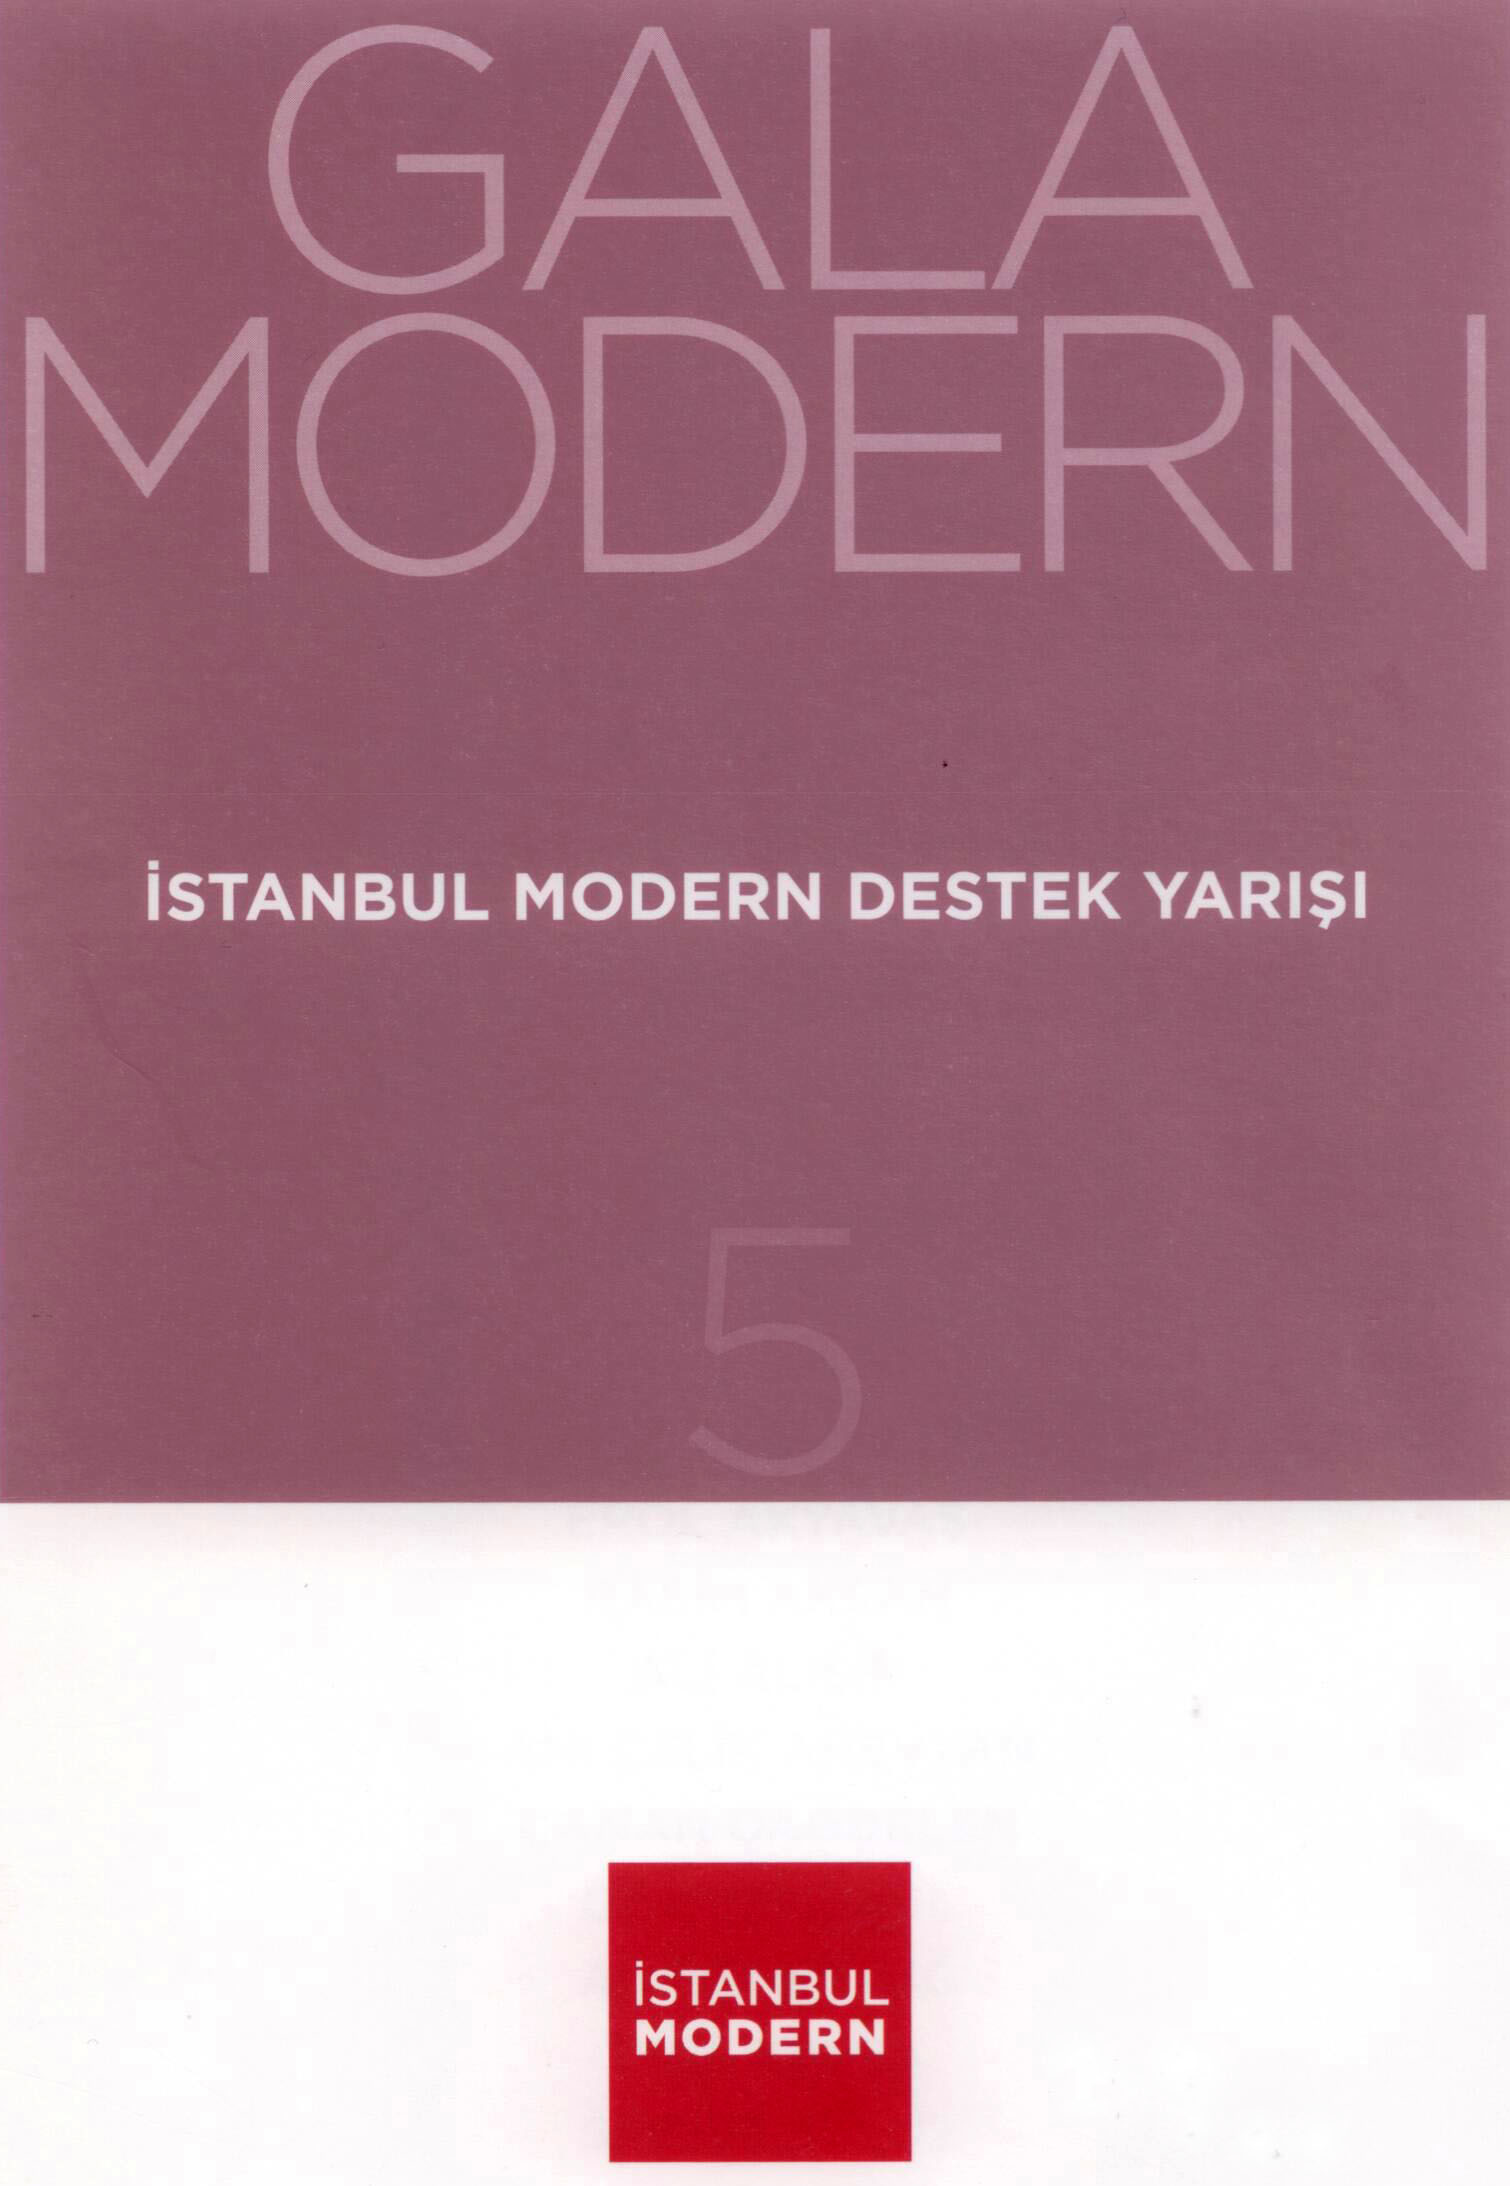 18/12/2013 - Aslı Torcu at “Gala Modern”, Istanbul Modern Museum